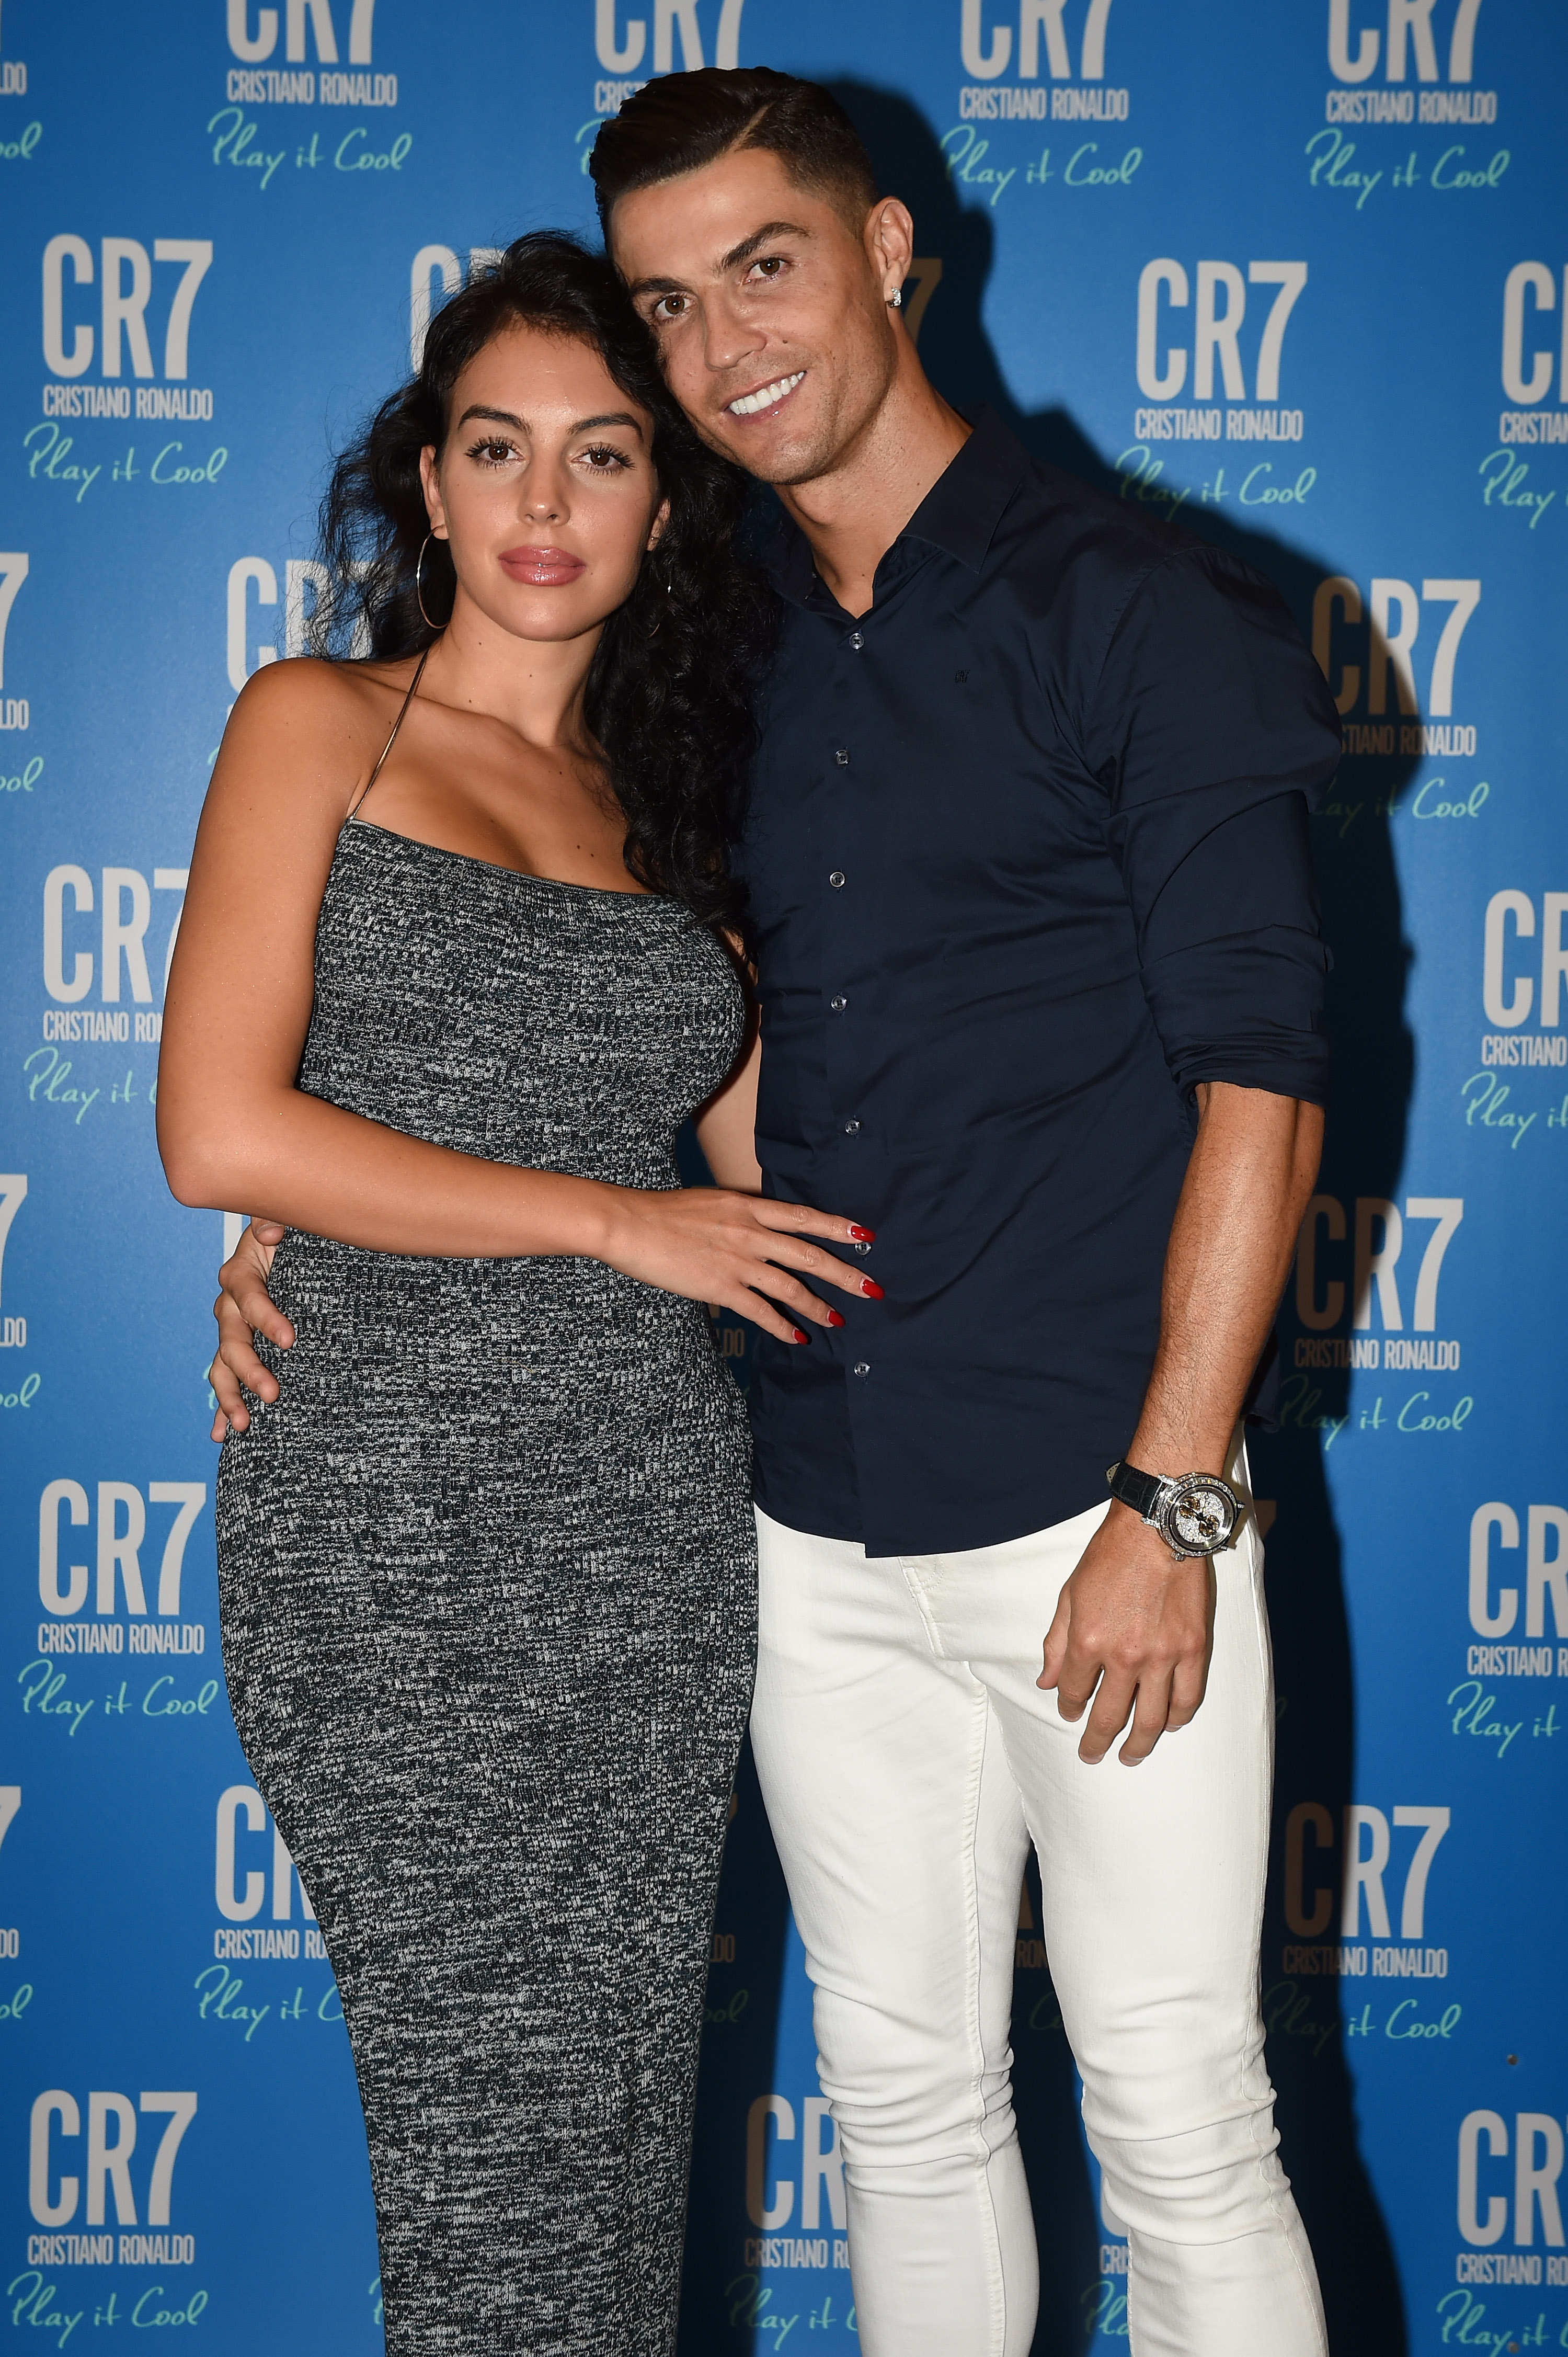 Georgina Rodríguez y Cristiano Ronaldo en un evento el 12 de septiembre de 2019 en Turín, Italia